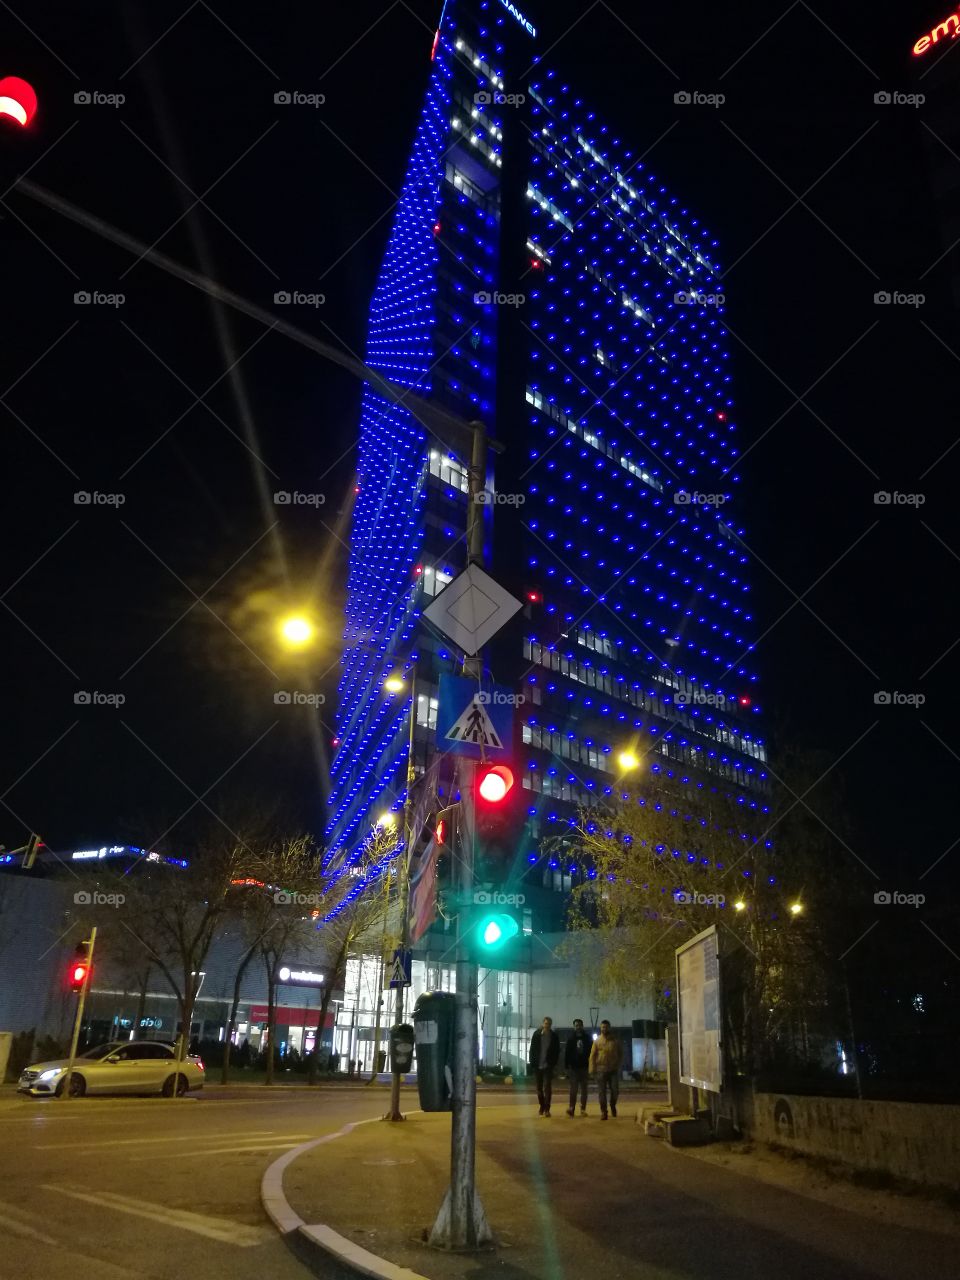 Huawei Building